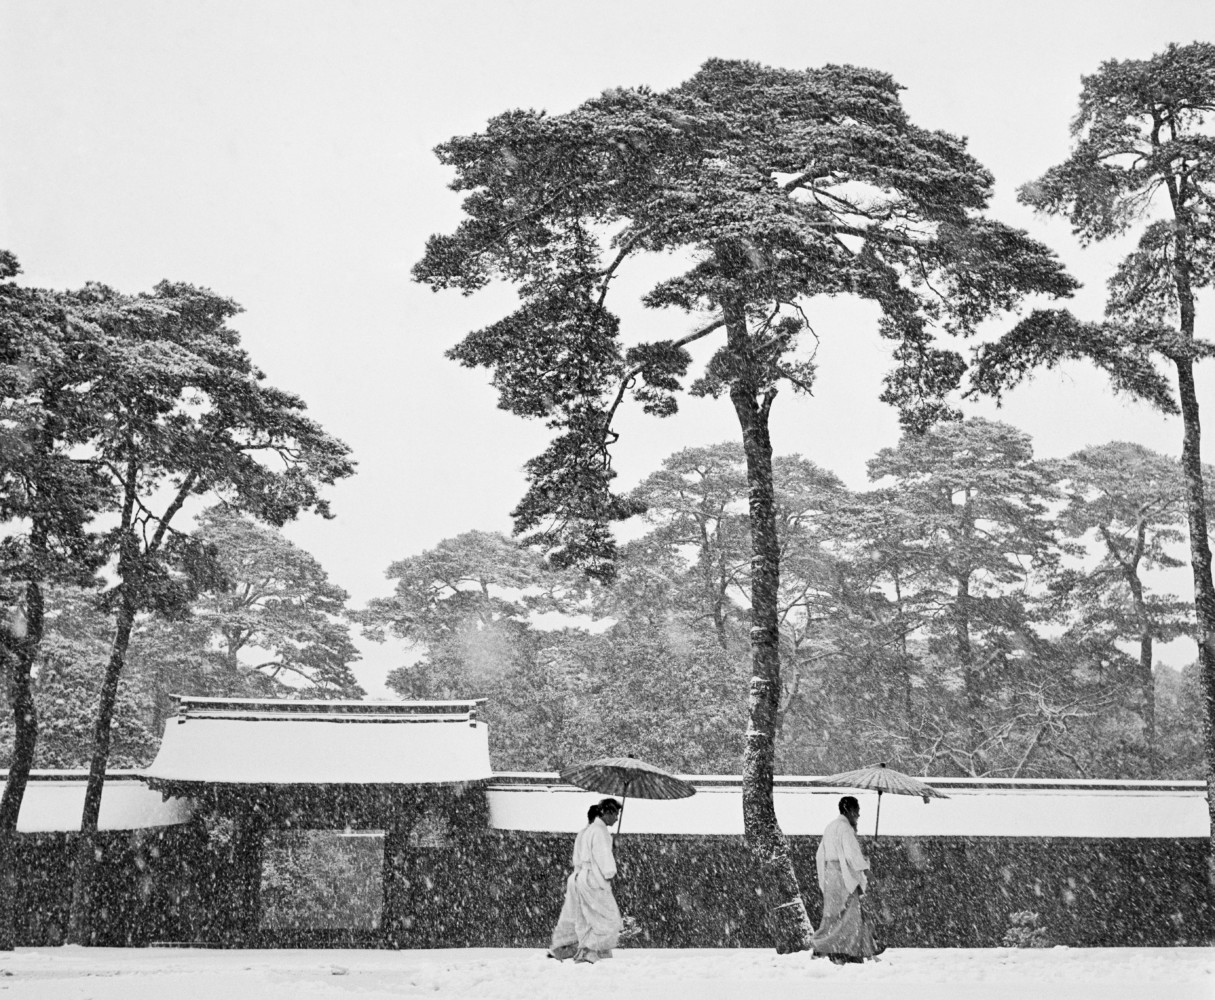 Shinto priests, Tokyo, Japan, 1951 © Werner Bischof / Magnum Photos